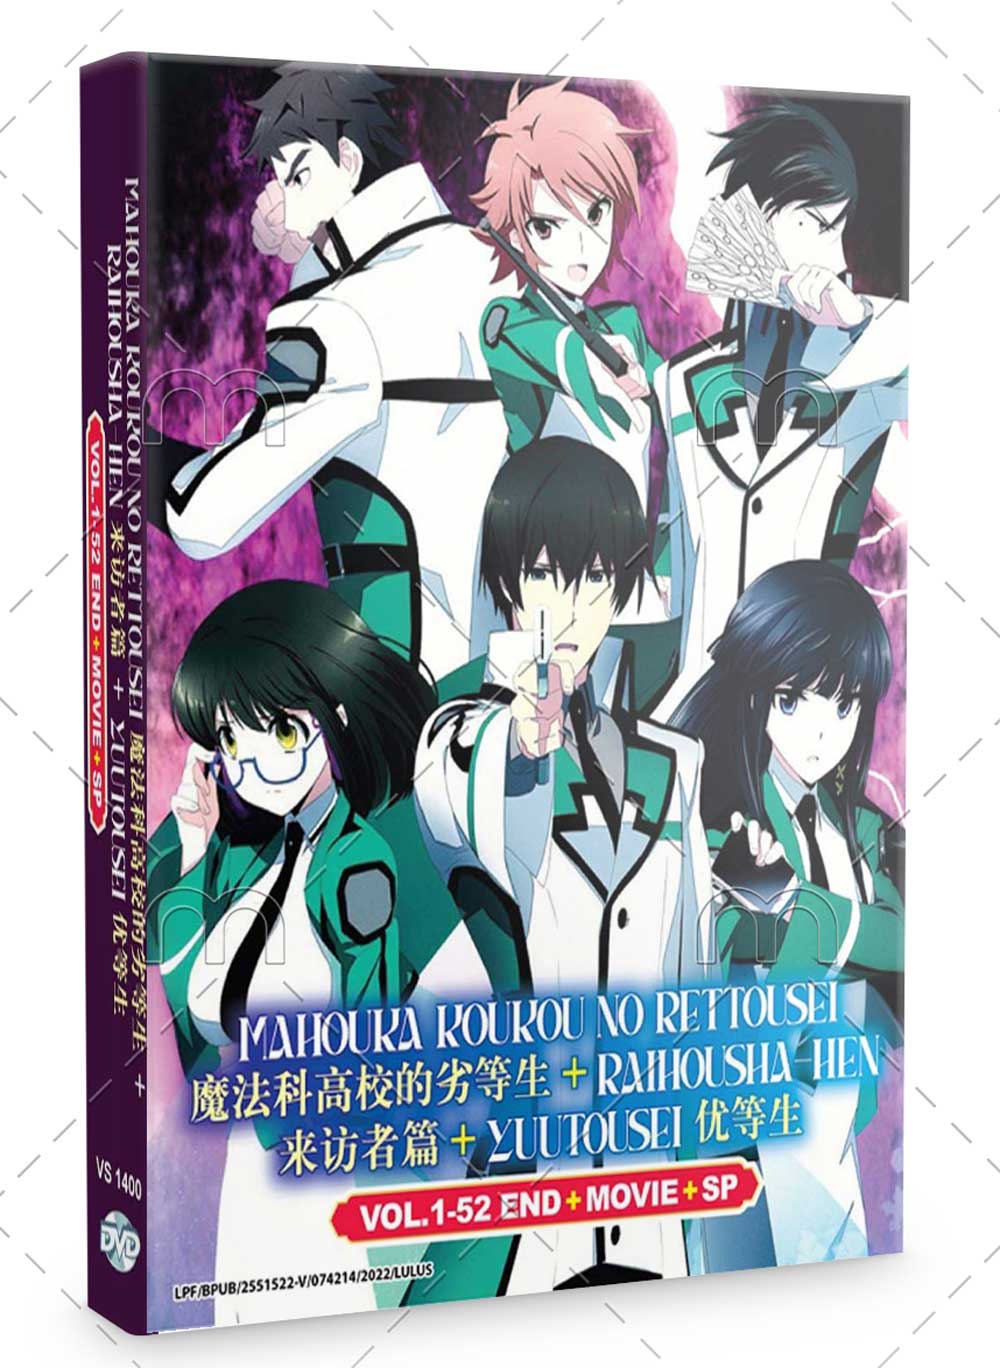 Mahouka Koukou No Rettousei + Raihousha-hen + Yuutousei + Movie + SP (DVD)  (2014-2021) Anime | Ep: 1-52 end (English Sub)